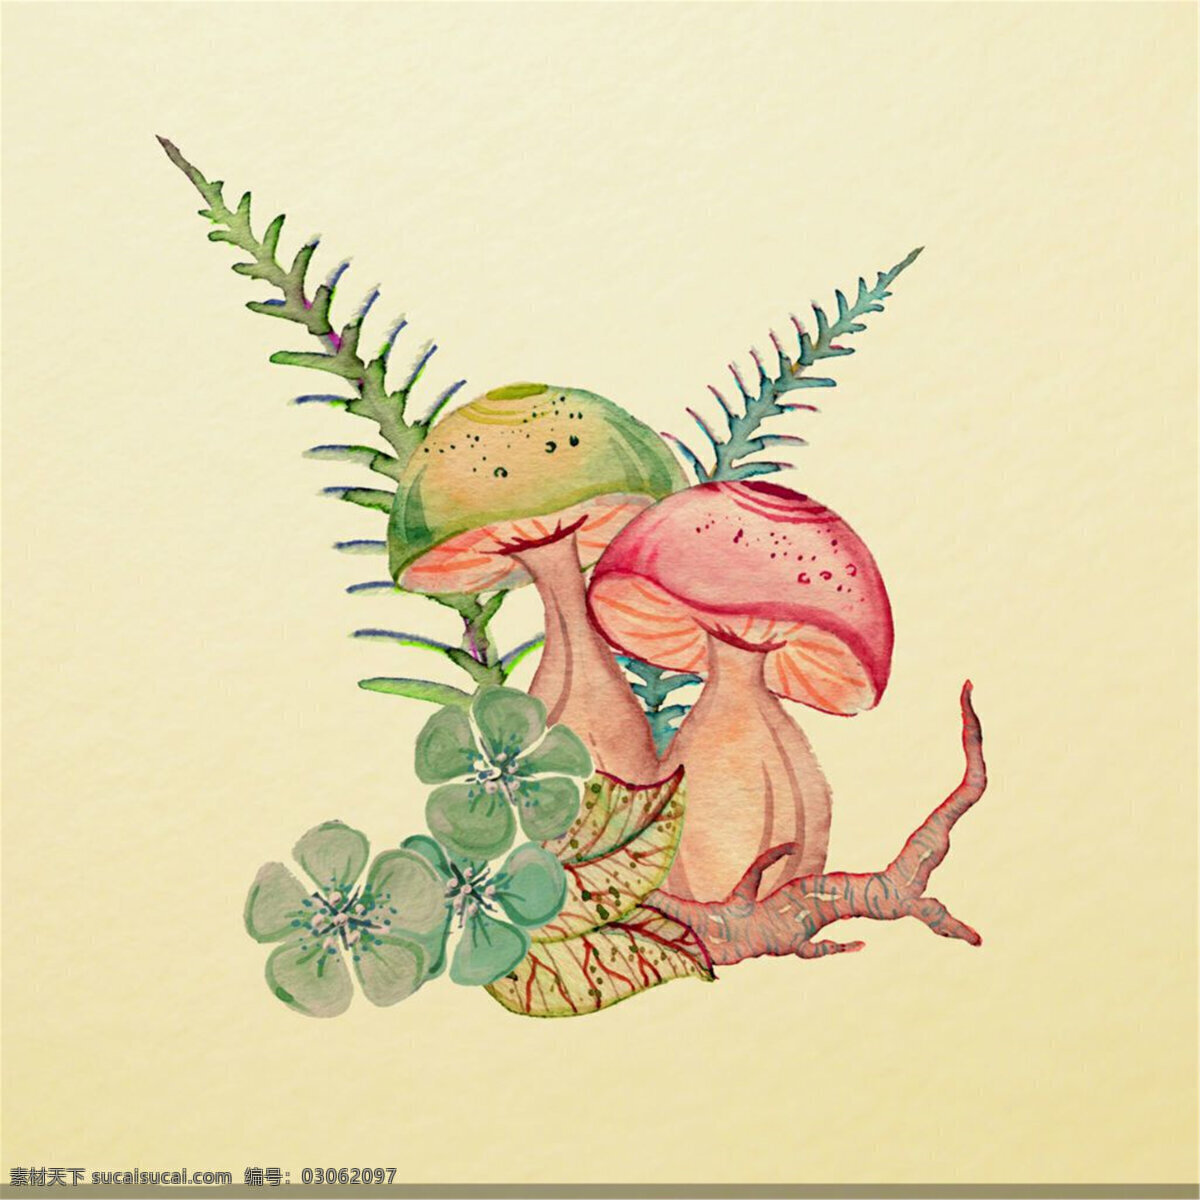 水彩 小草 蘑菇 插画 图 画 小清新 矢量素材 卡通 卡通植物 矢量 卡通插画 花朵 水彩插画 红菇